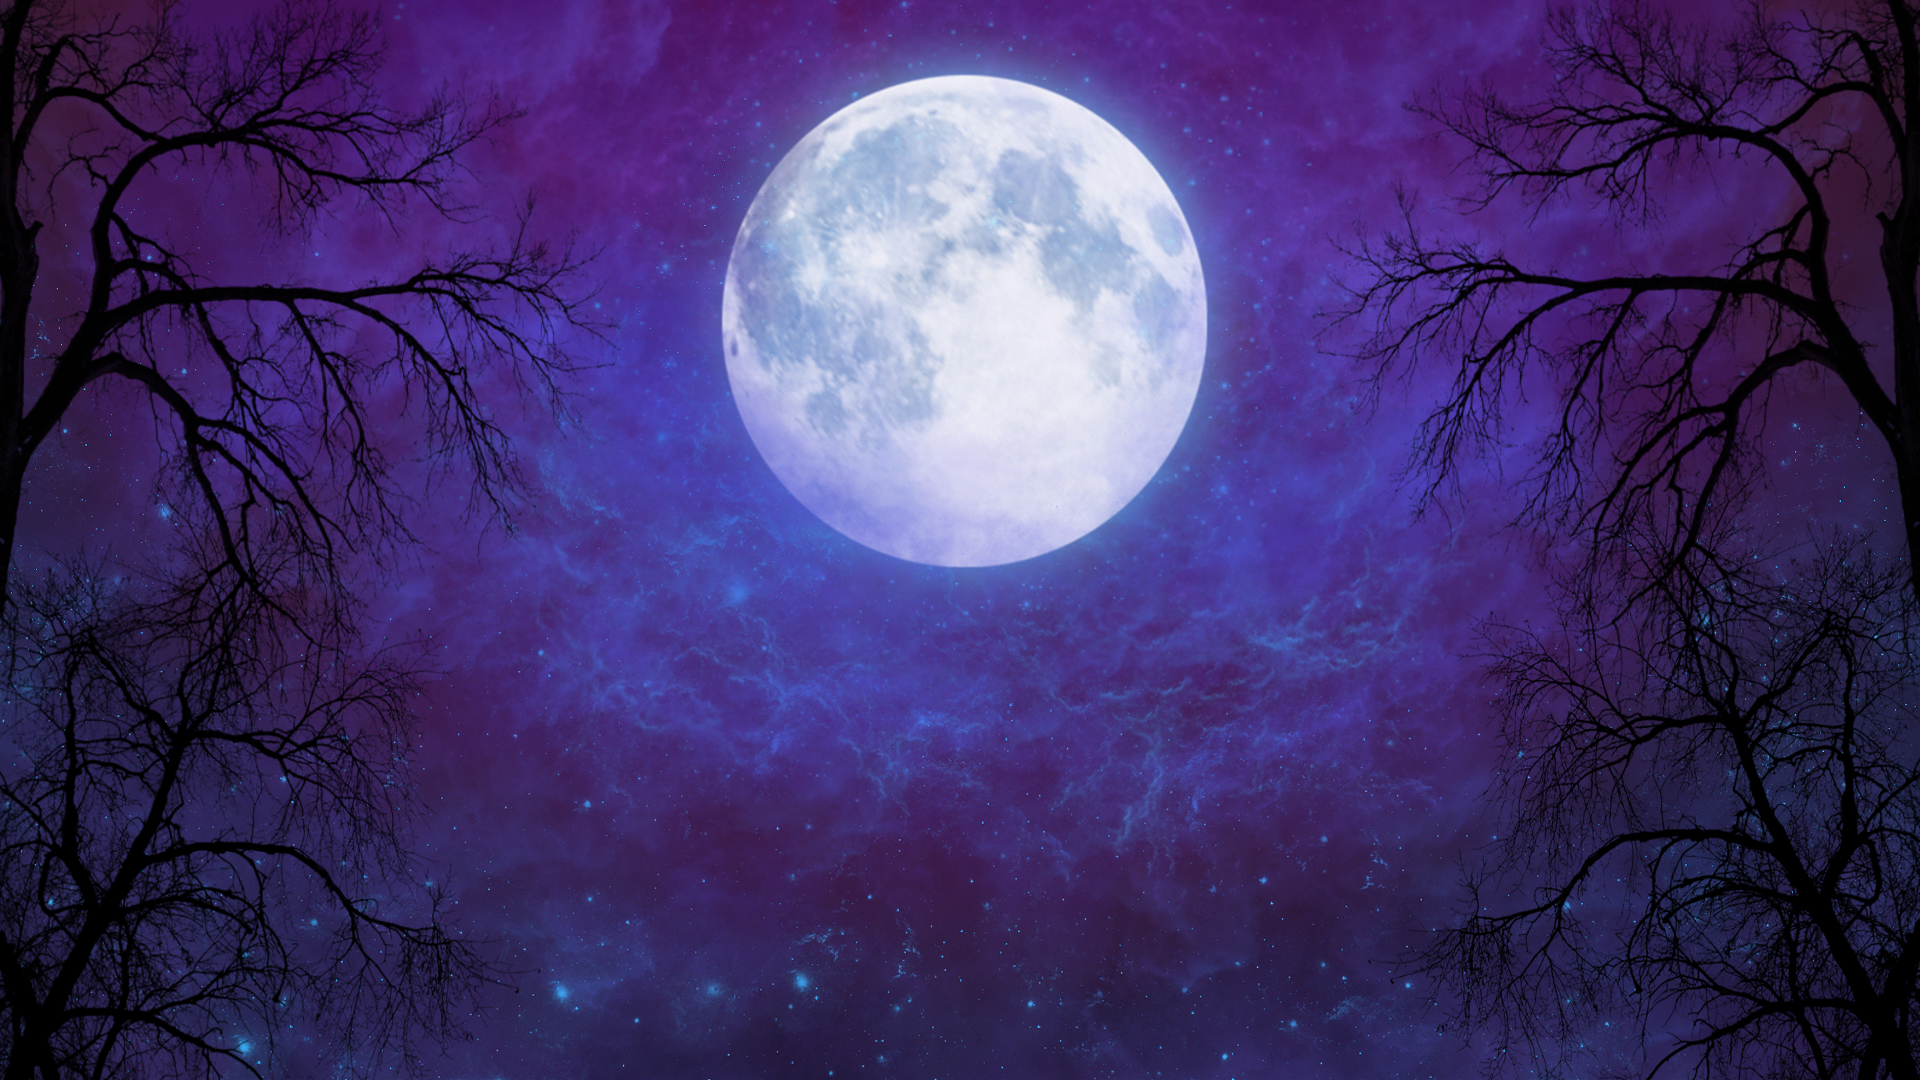 Скачать обои бесплатно Ночь, Облака, Луна, Силуэт, Звездное Небо, Пурпурный, Художественные картинка на рабочий стол ПК